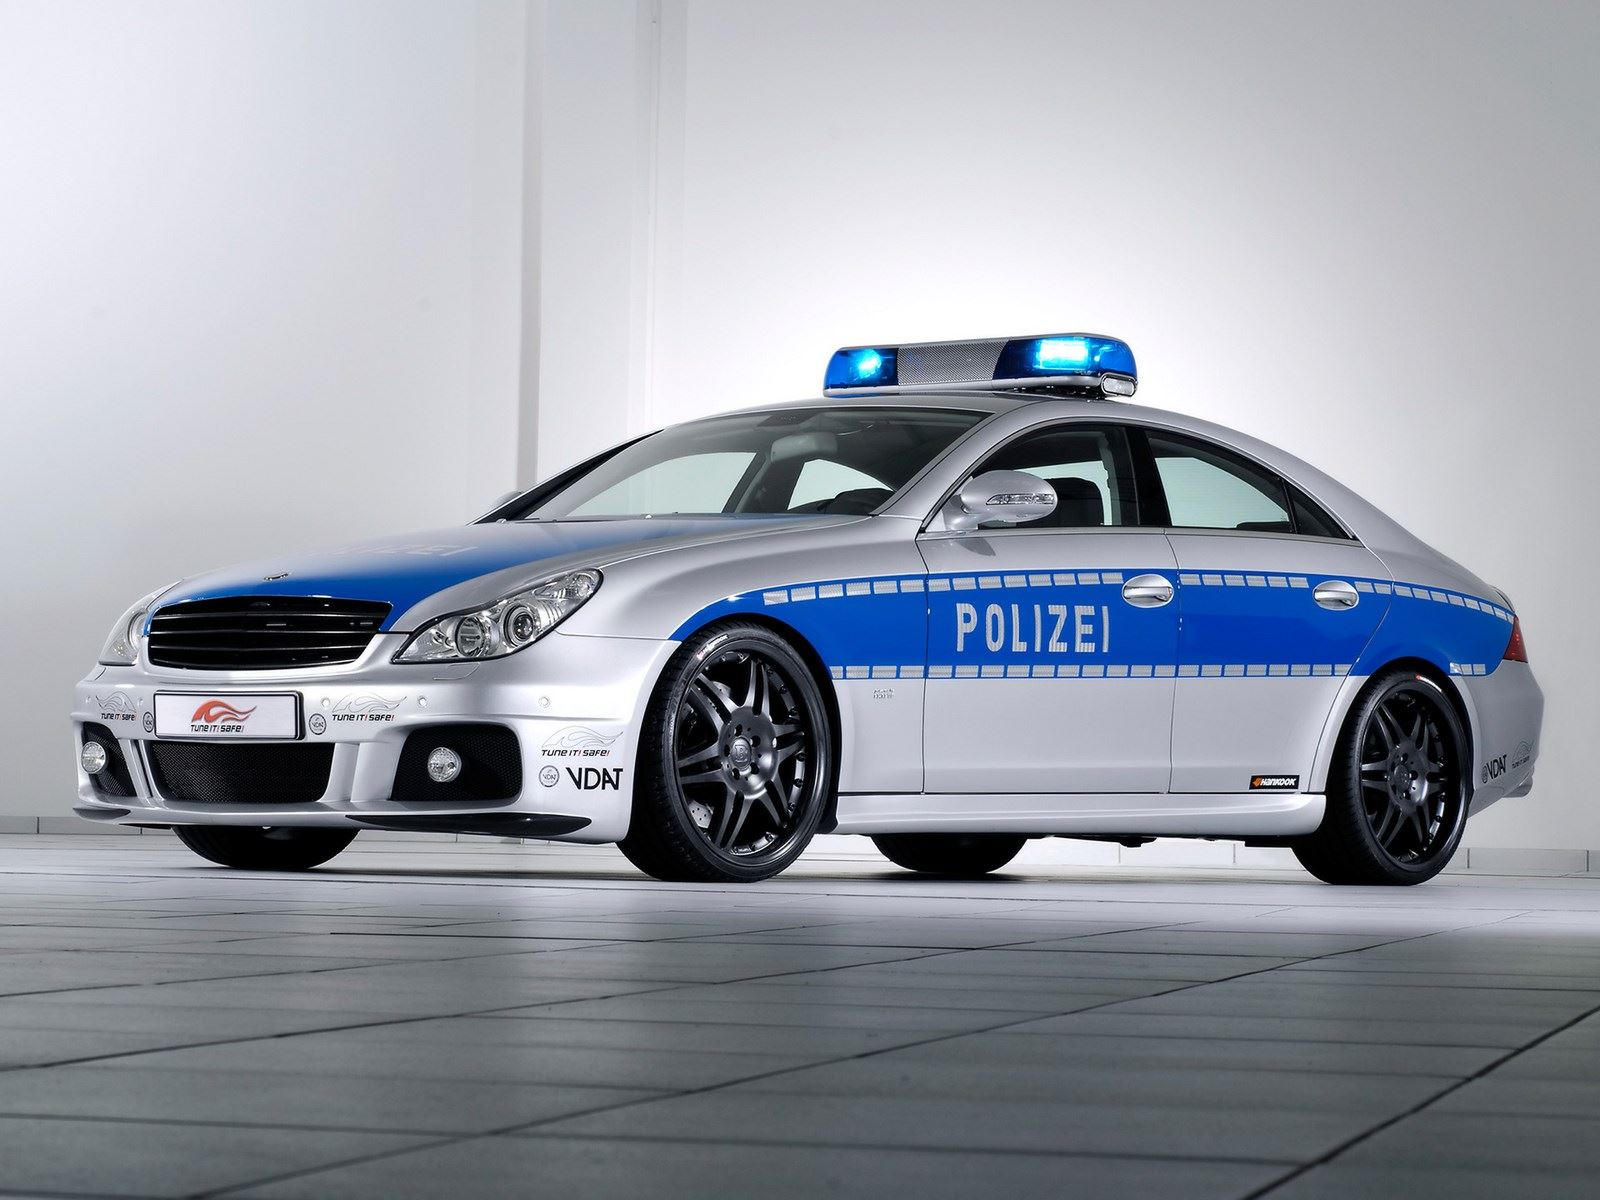 "بالصور" أكثر 10 سيارات شرطة تميزا حول العالم 54